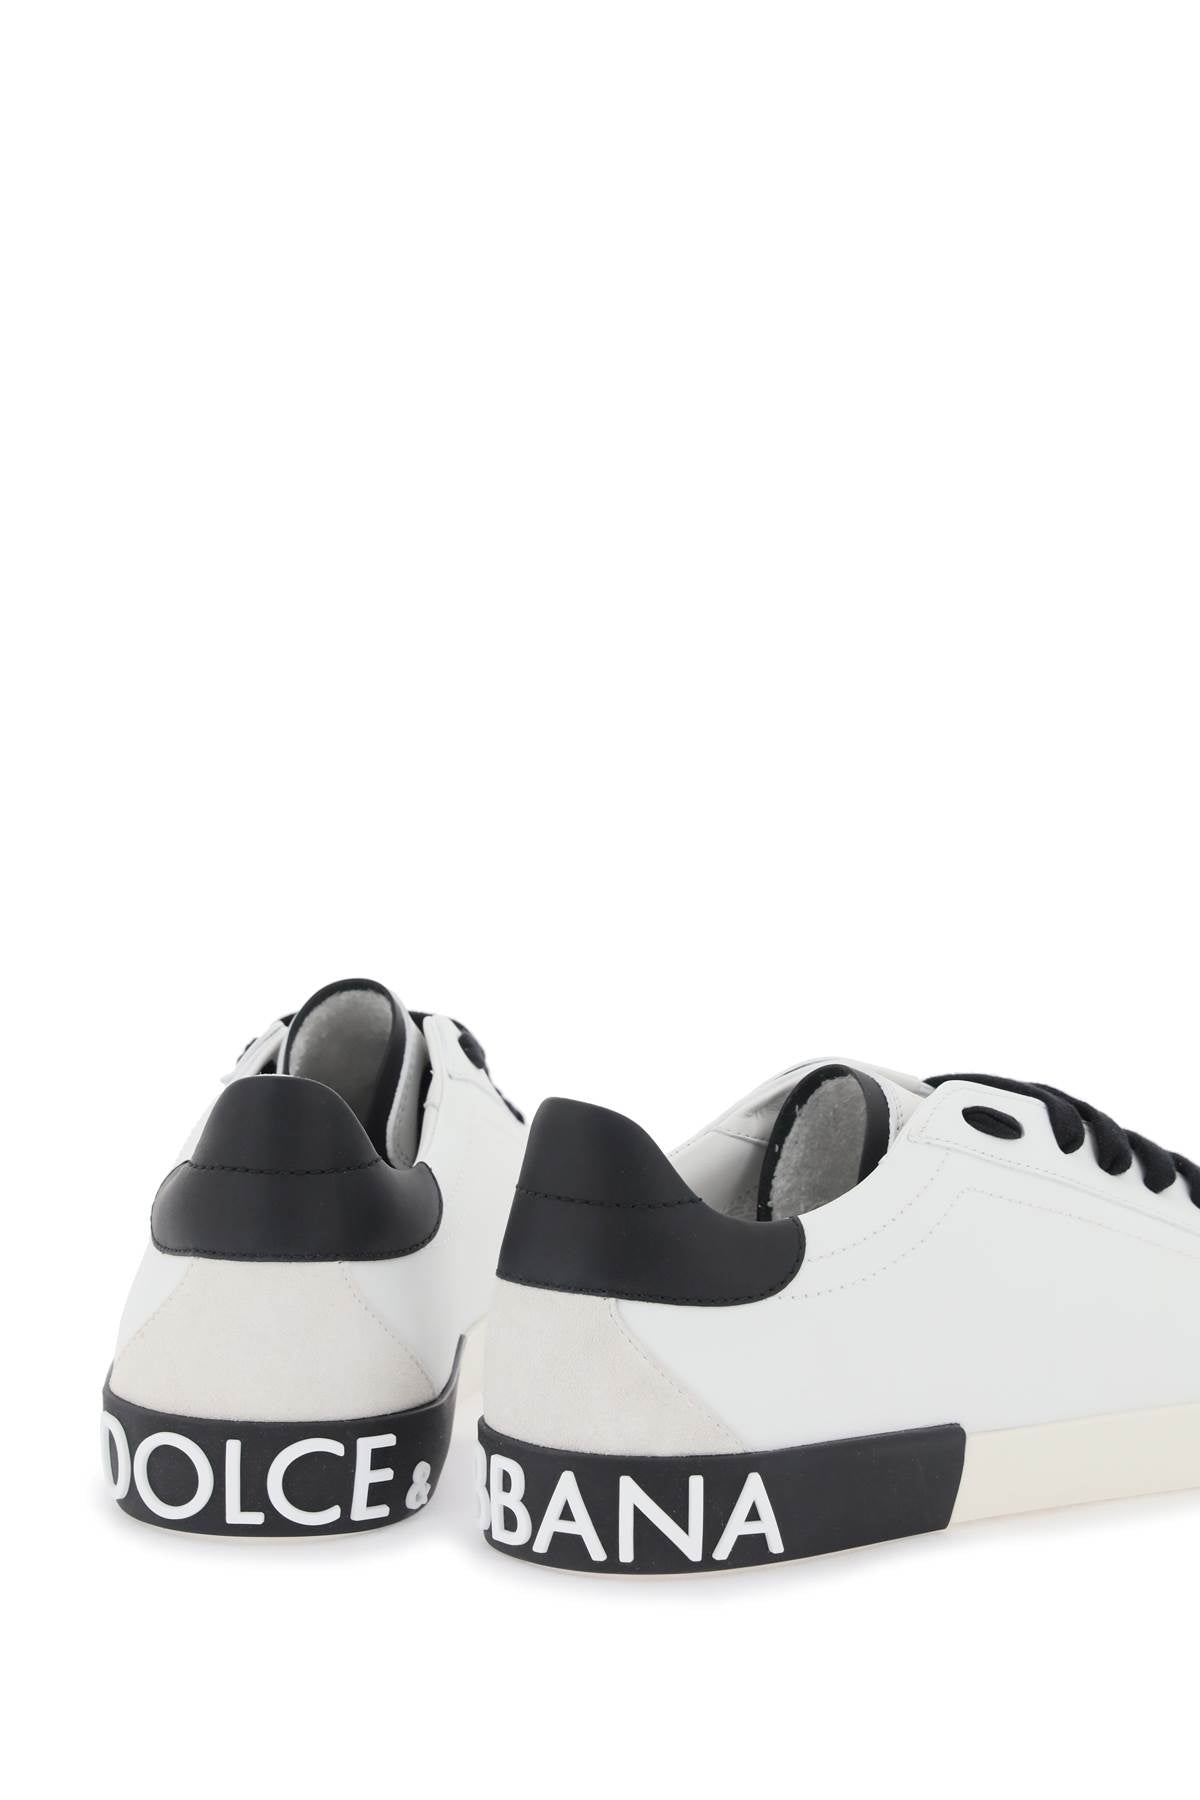 Shop Dolce & Gabbana Nappa Leather Portofino Sneakers In White, Black